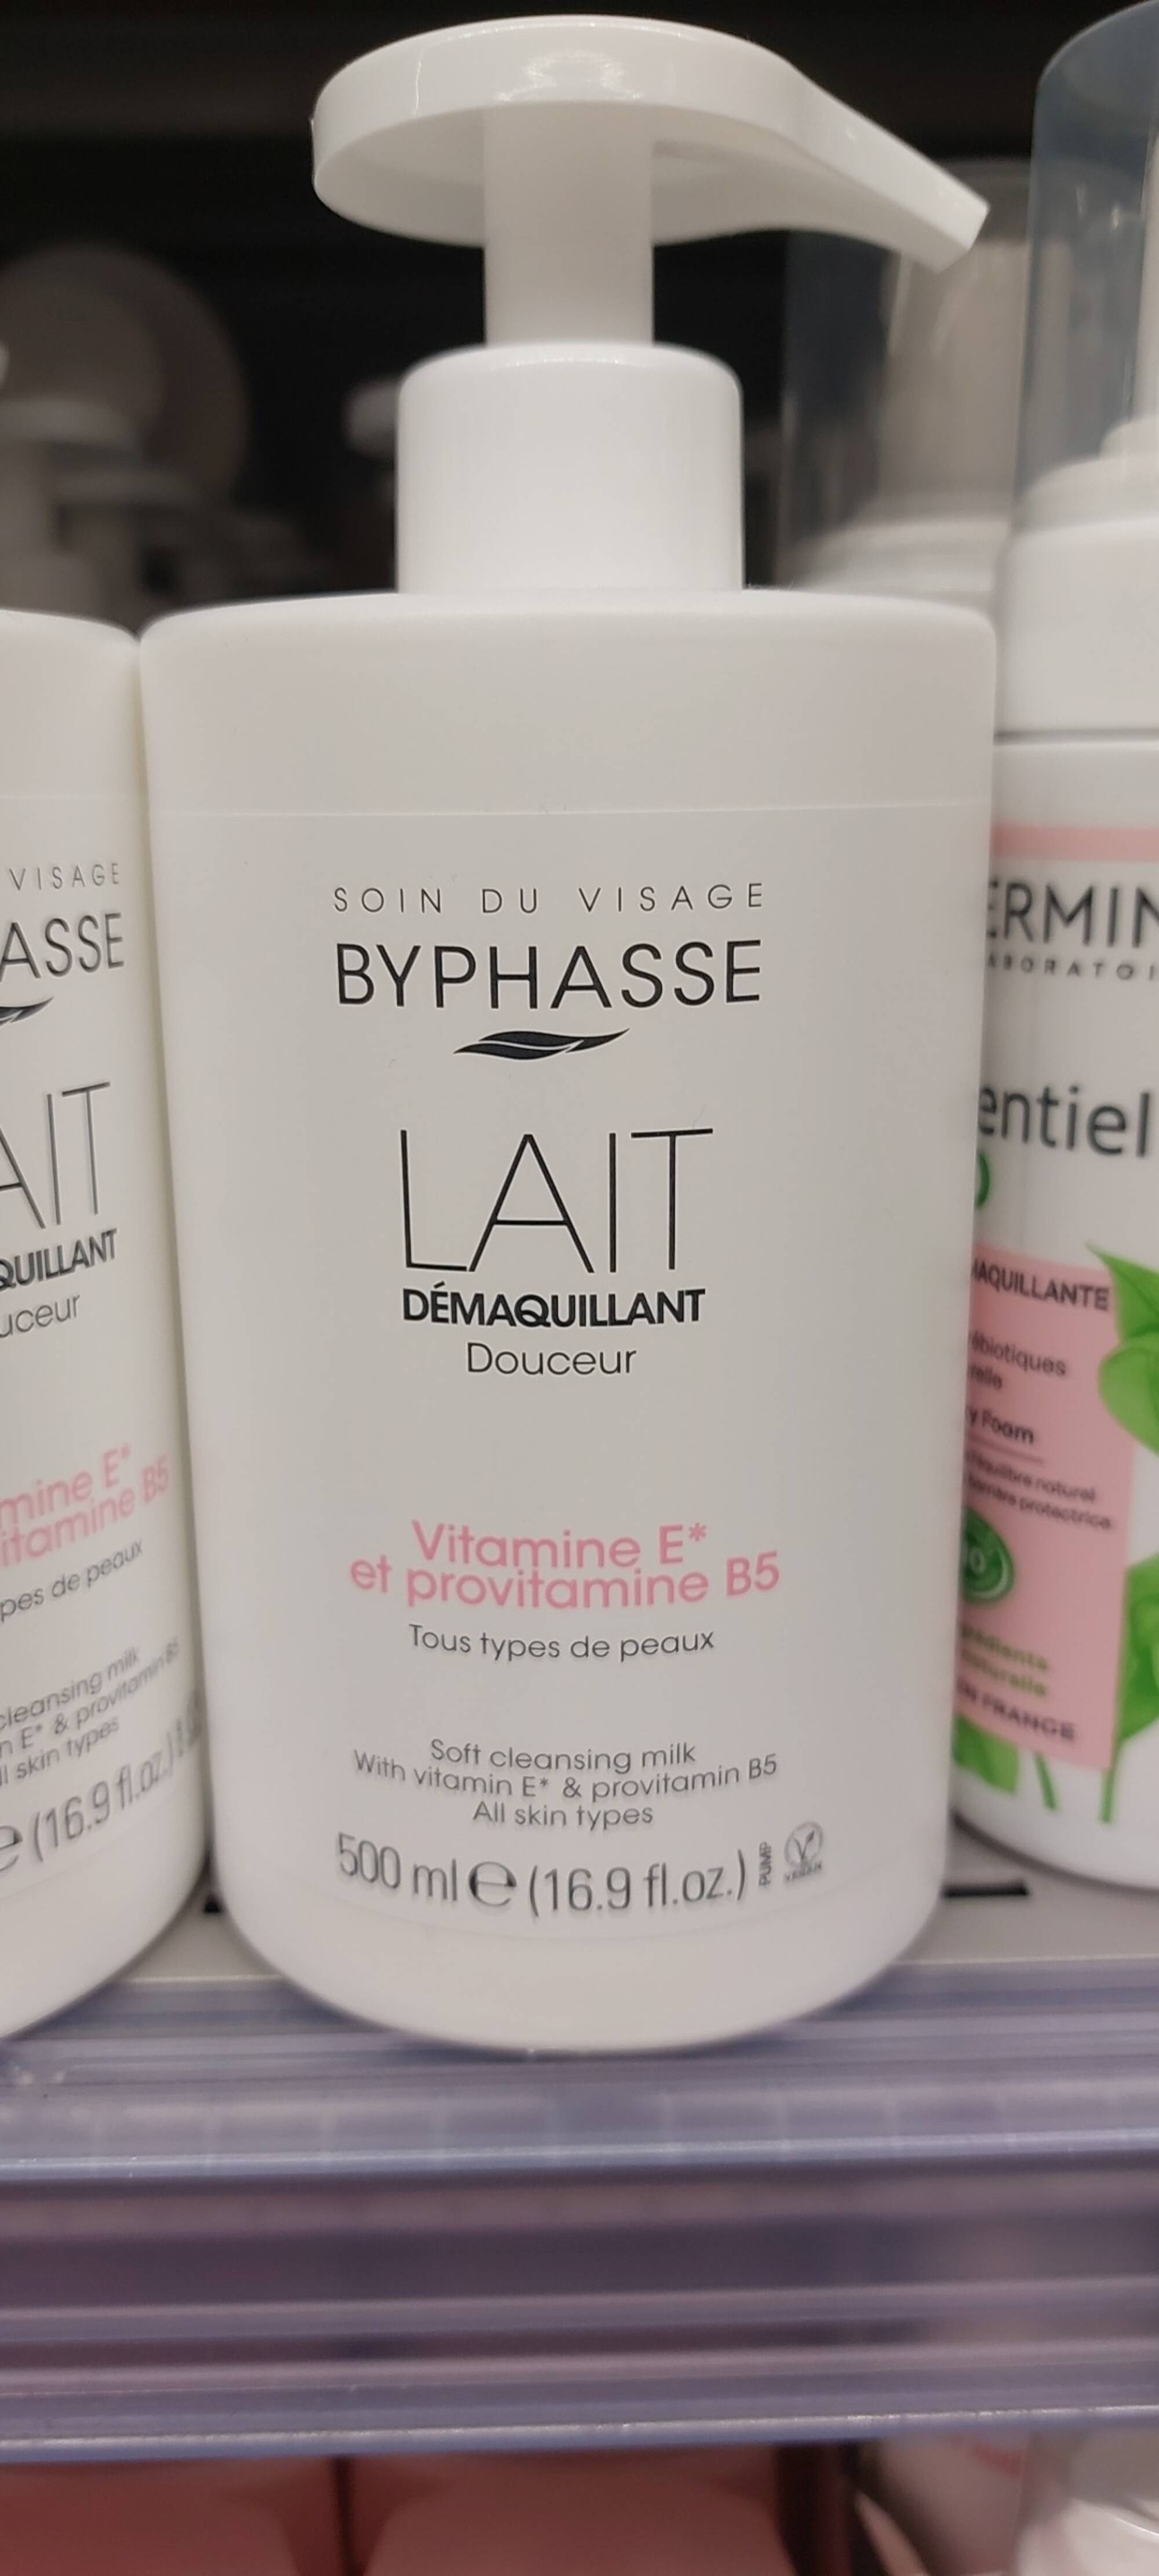 Byphasse - Lait démaquillant visage et yeaux Douceur - Bottle